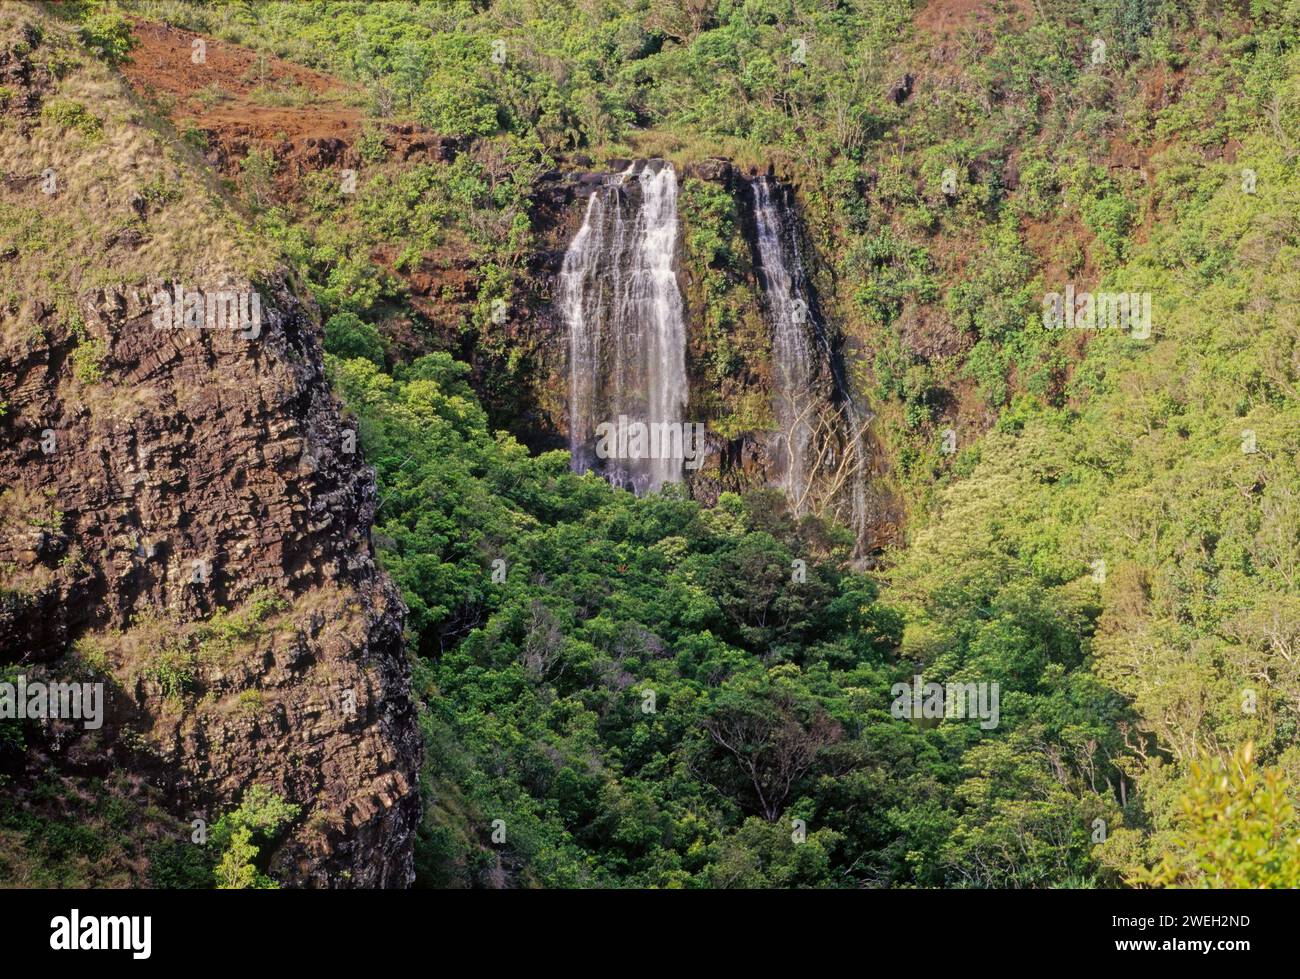 Les chutes de ʻŌpaekaʻa sont une cascade située sur le ruisseau ʻŌpaekaʻa dans le parc d'État de Wailua River sur le côté est de l'île hawaïenne de Kauai. Banque D'Images